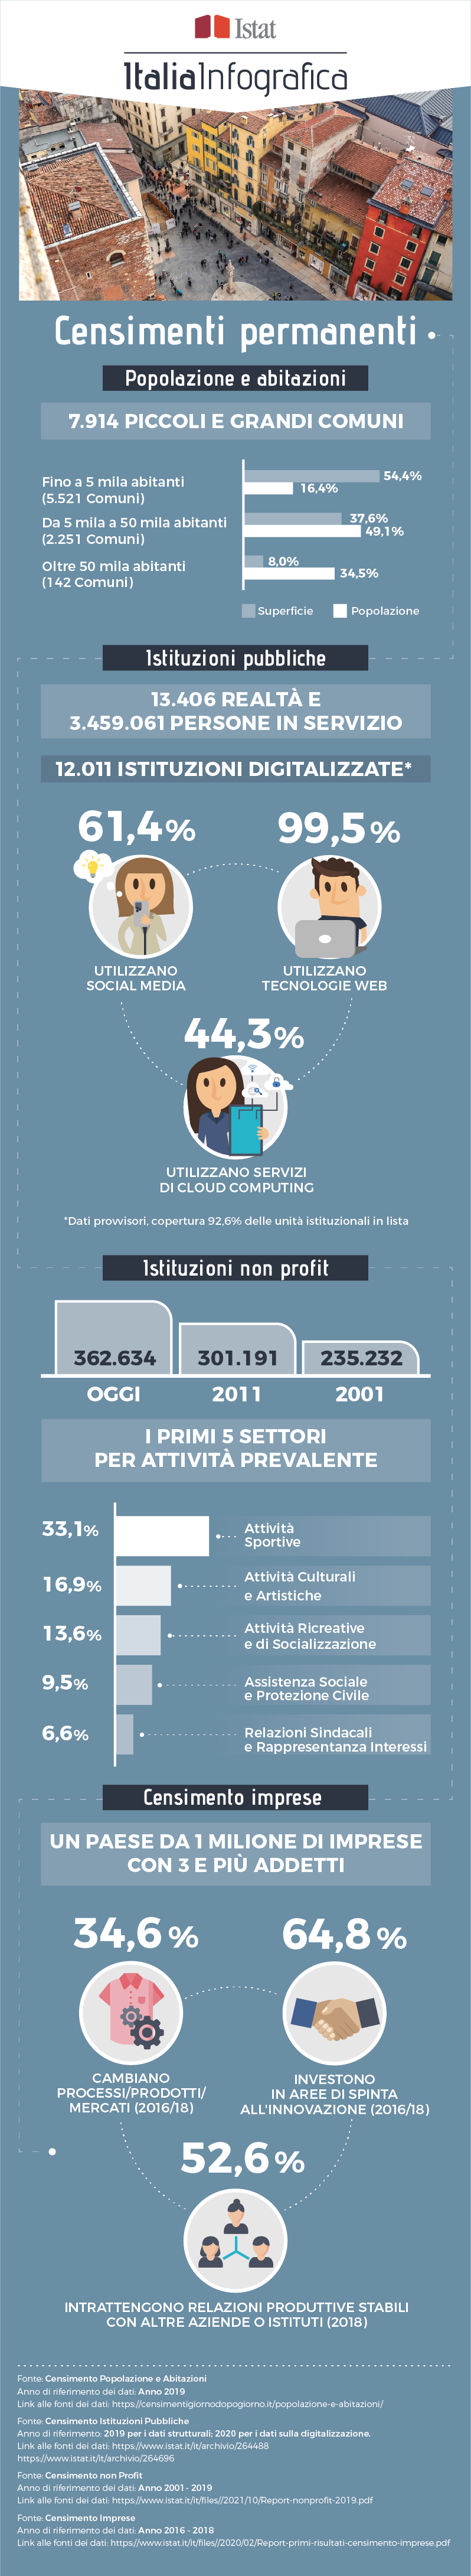 immagine di infografica con titolo ItaliaInfografica-Censimenti permanenti